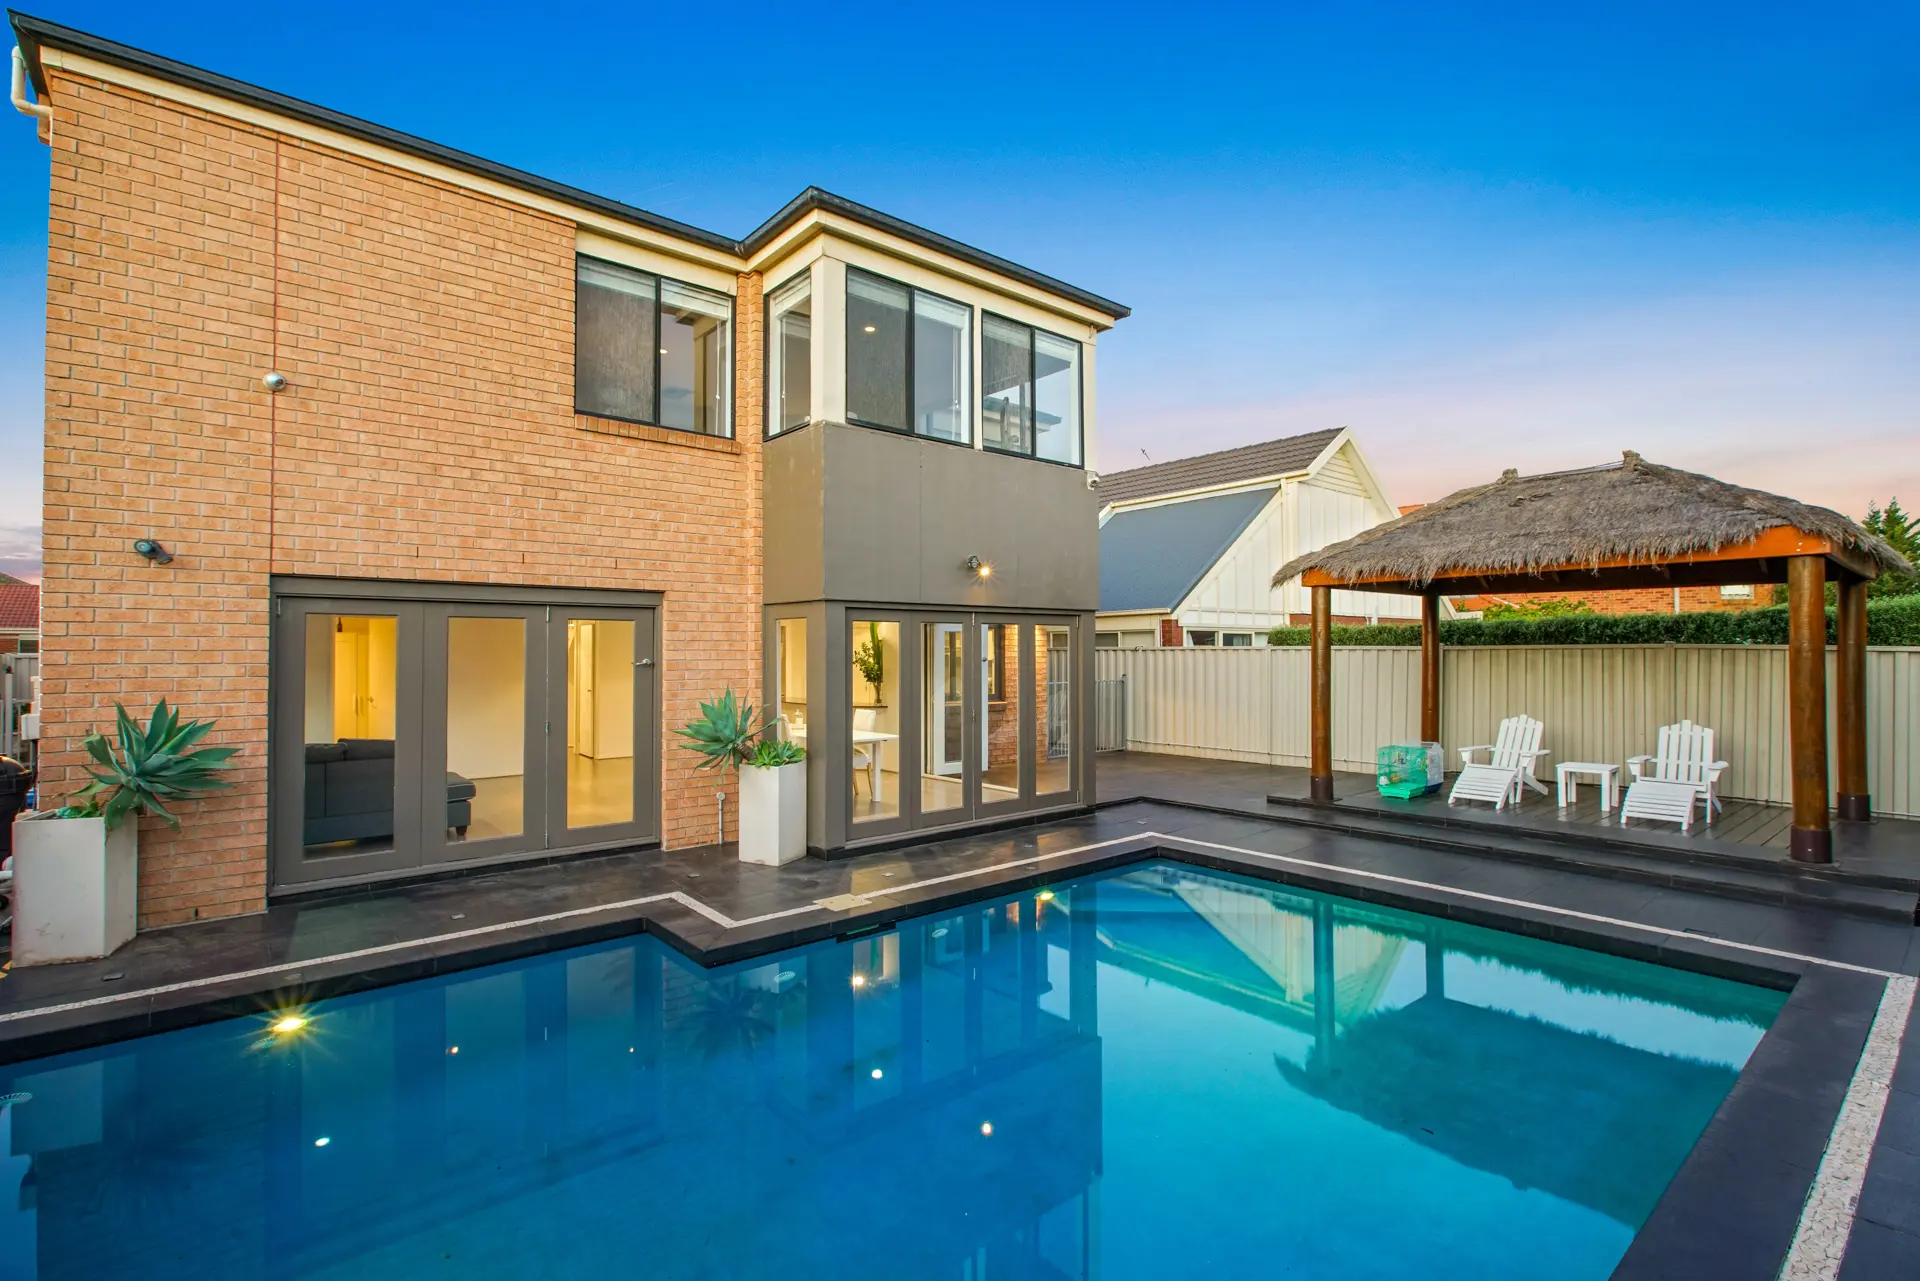 Photo immobilière HDR du jardin avec piscine d'une maison.